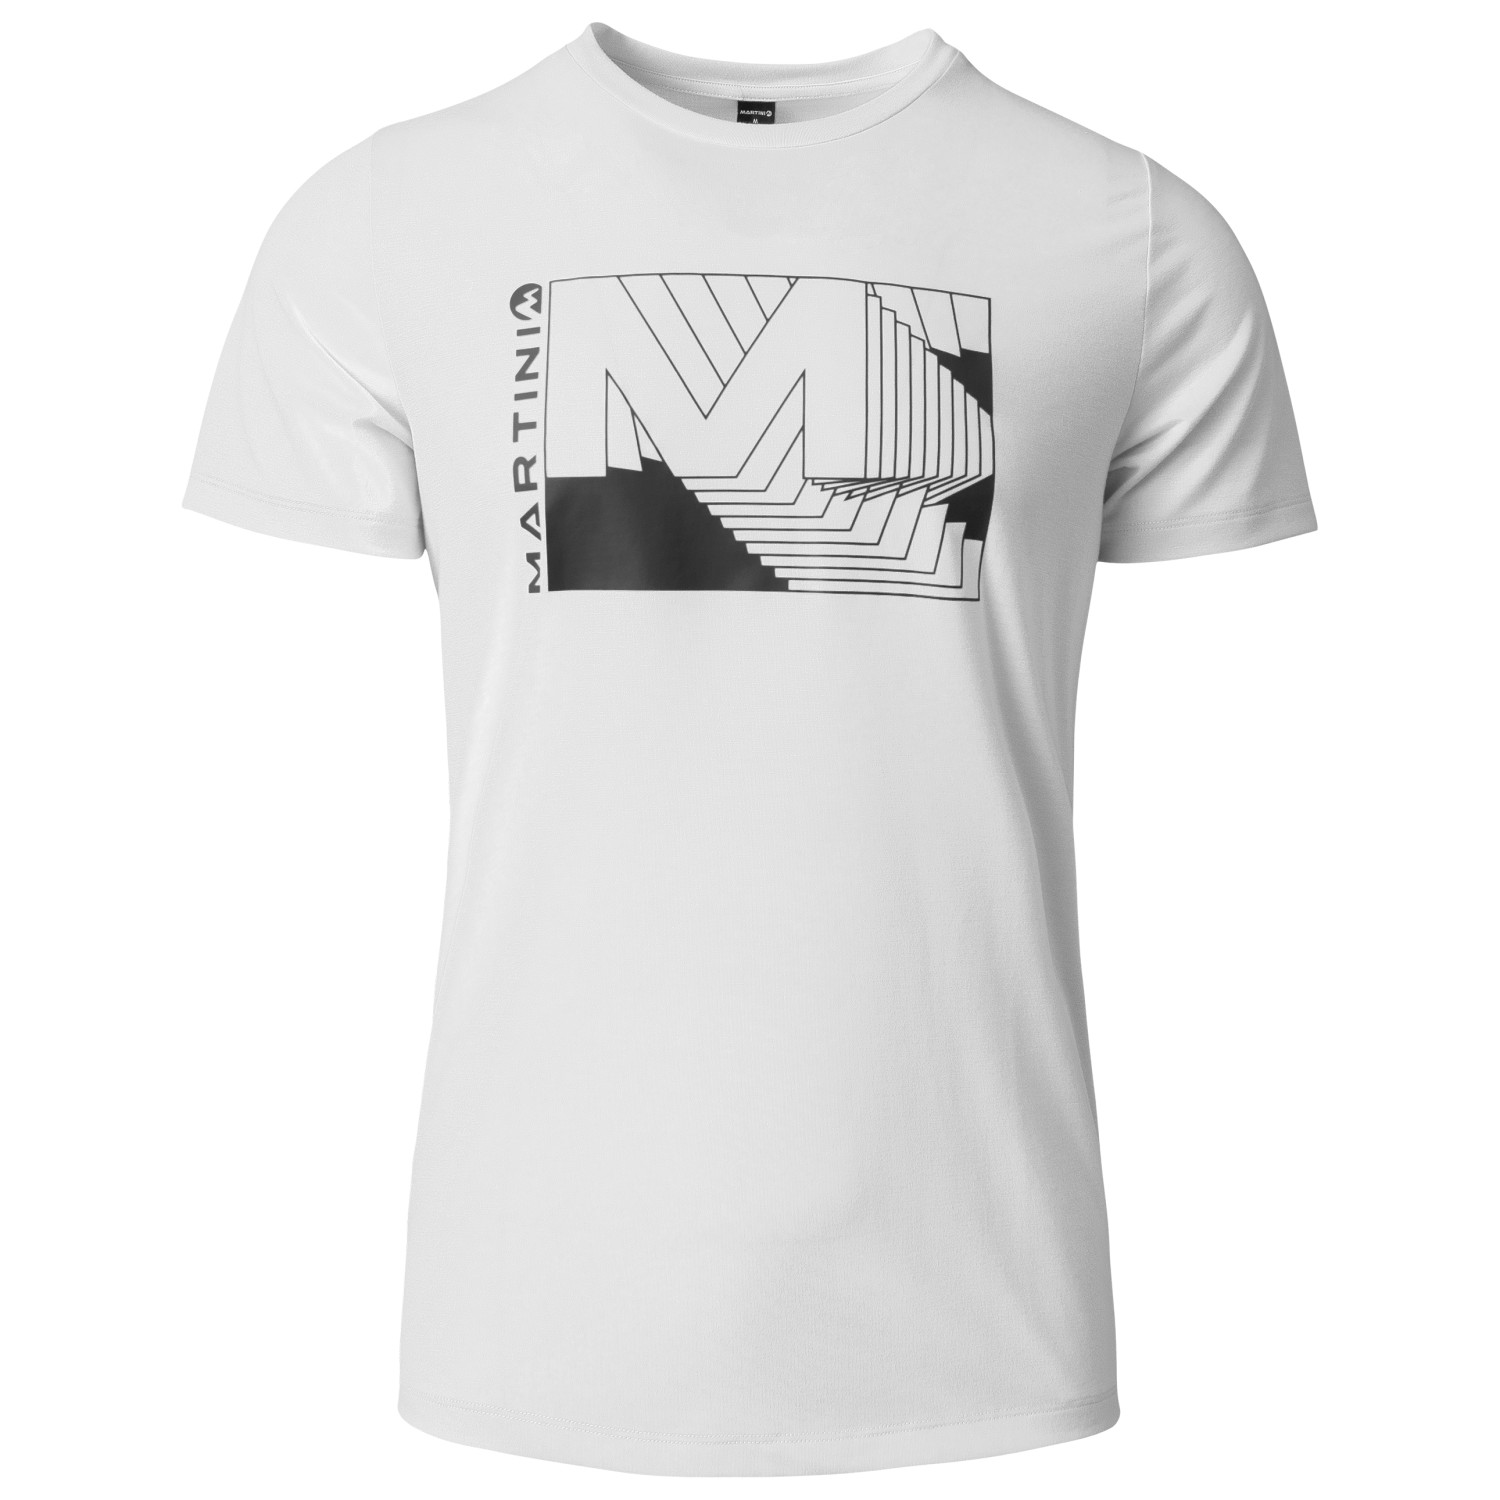 Функциональная рубашка Martini Hillclimb Shirt, цвет white_black